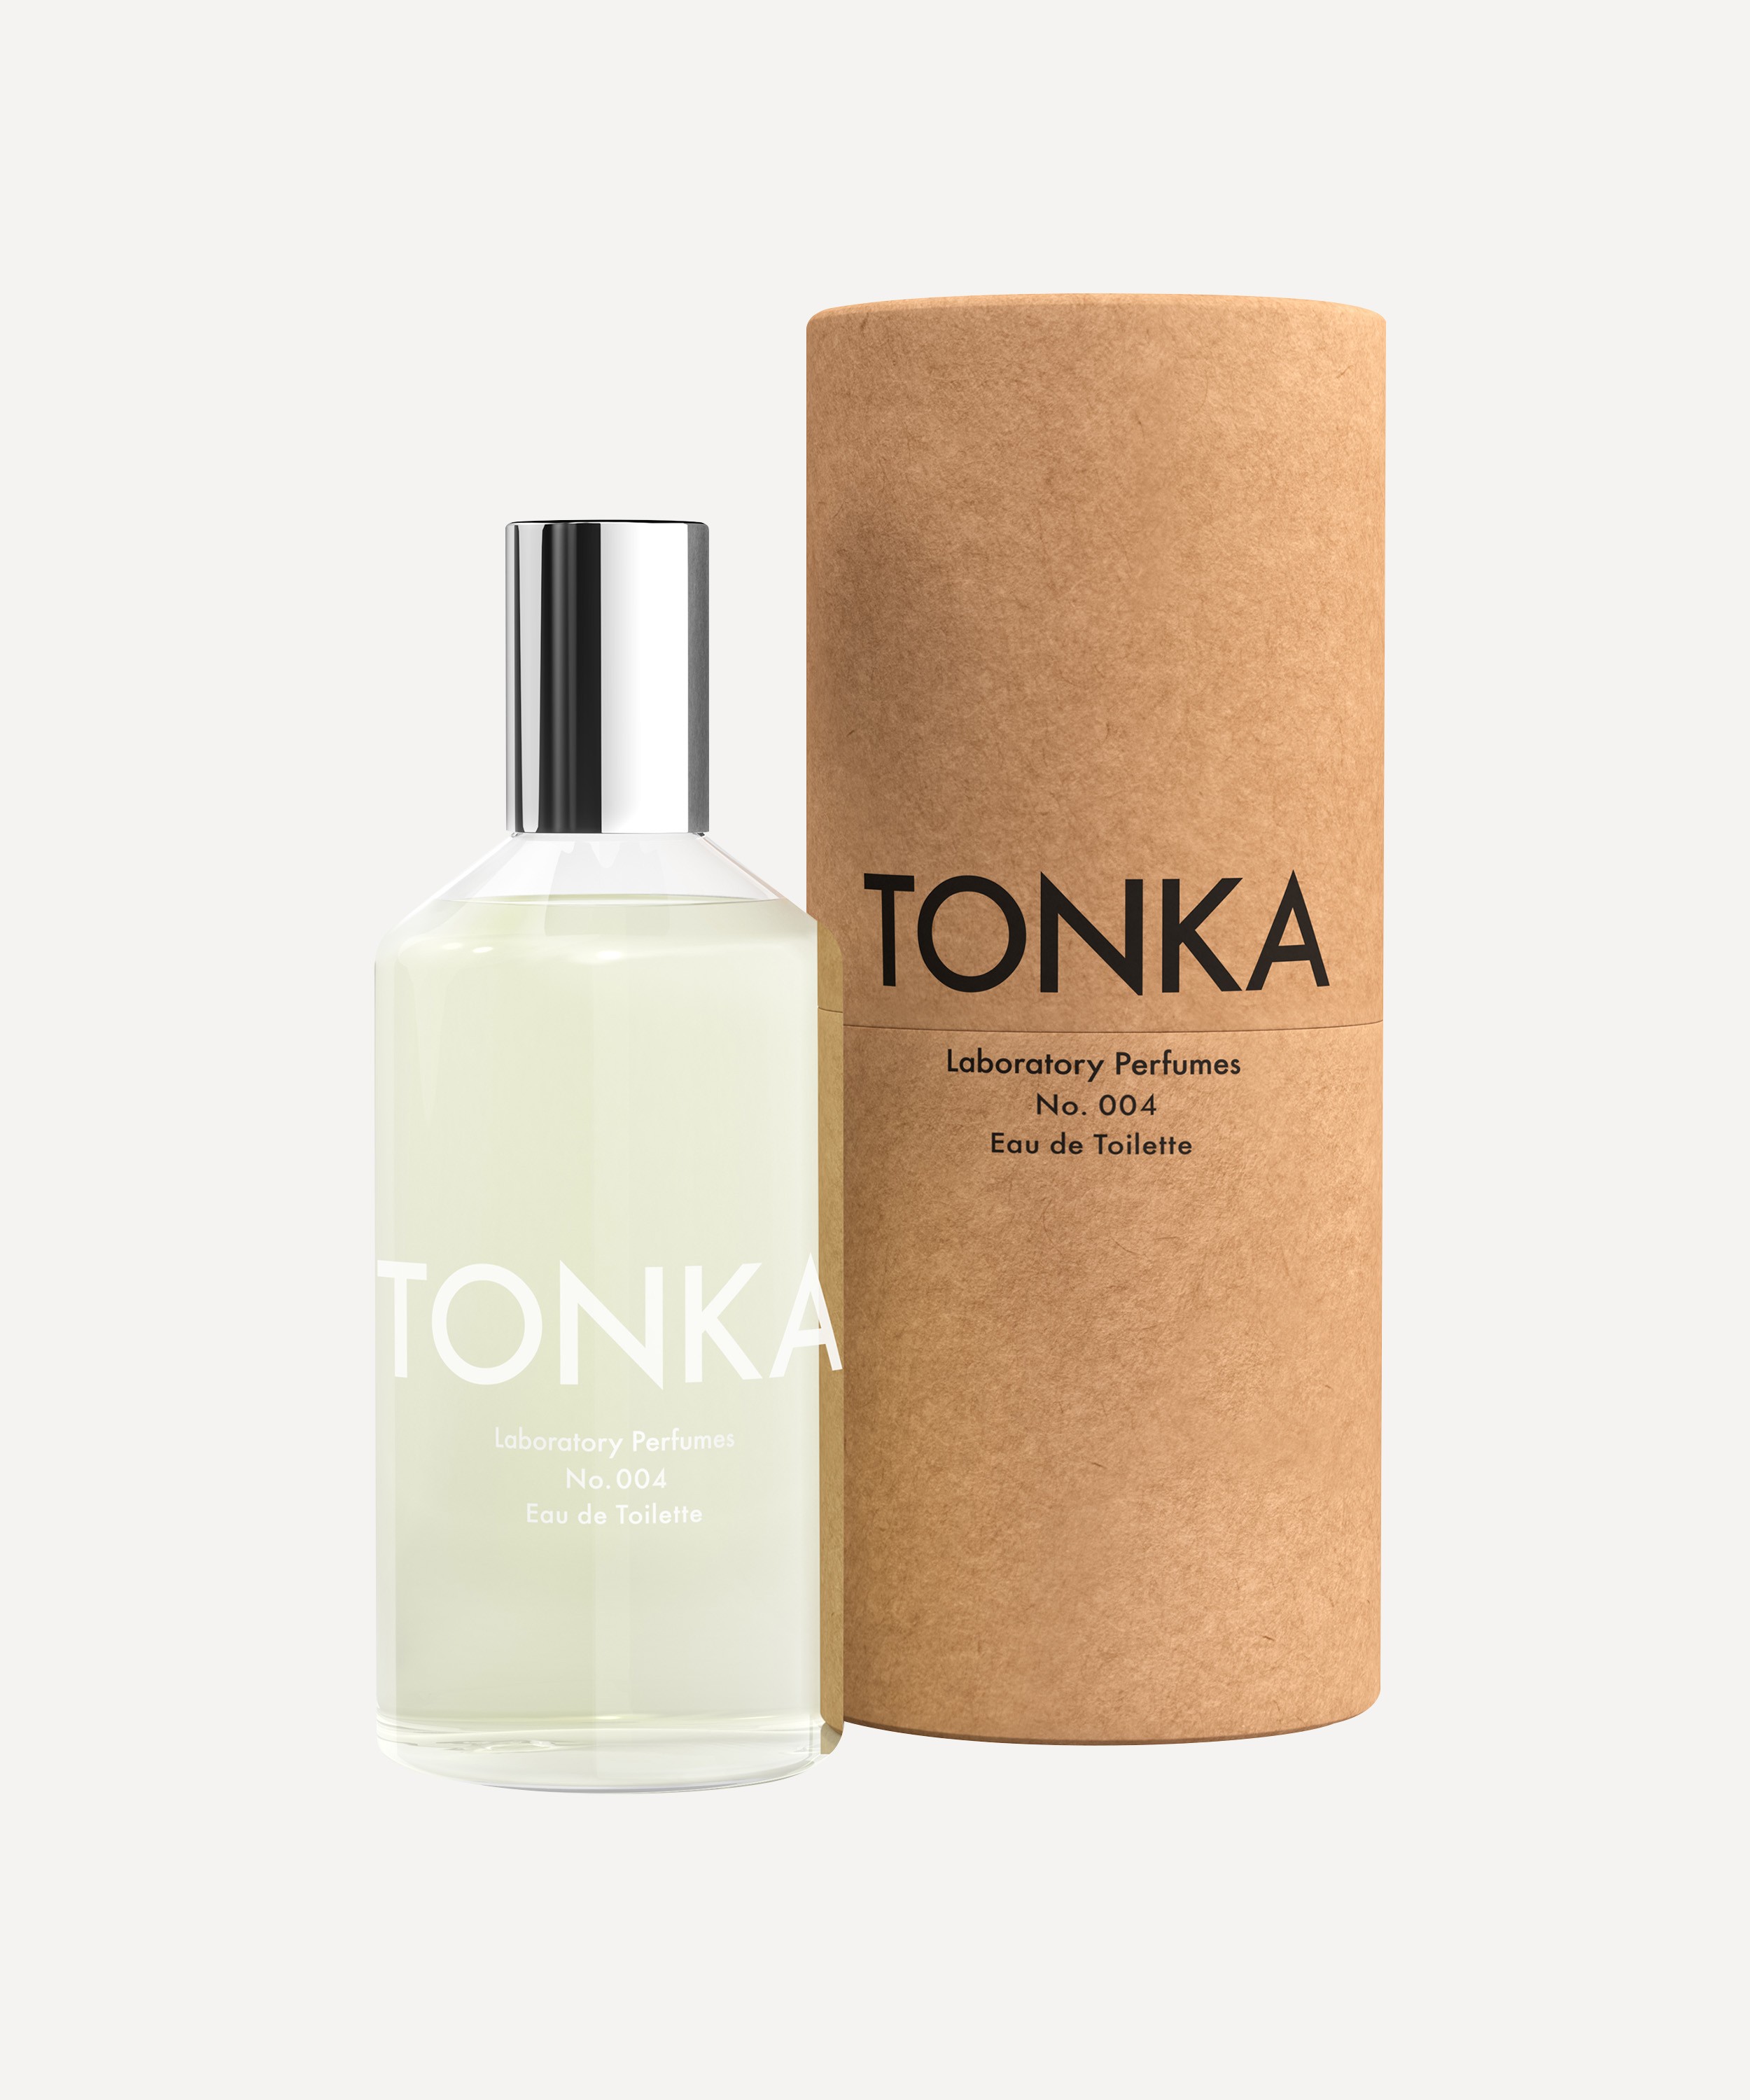 Laboratory Perfumes - Tonka Eau de Toilette 100ml